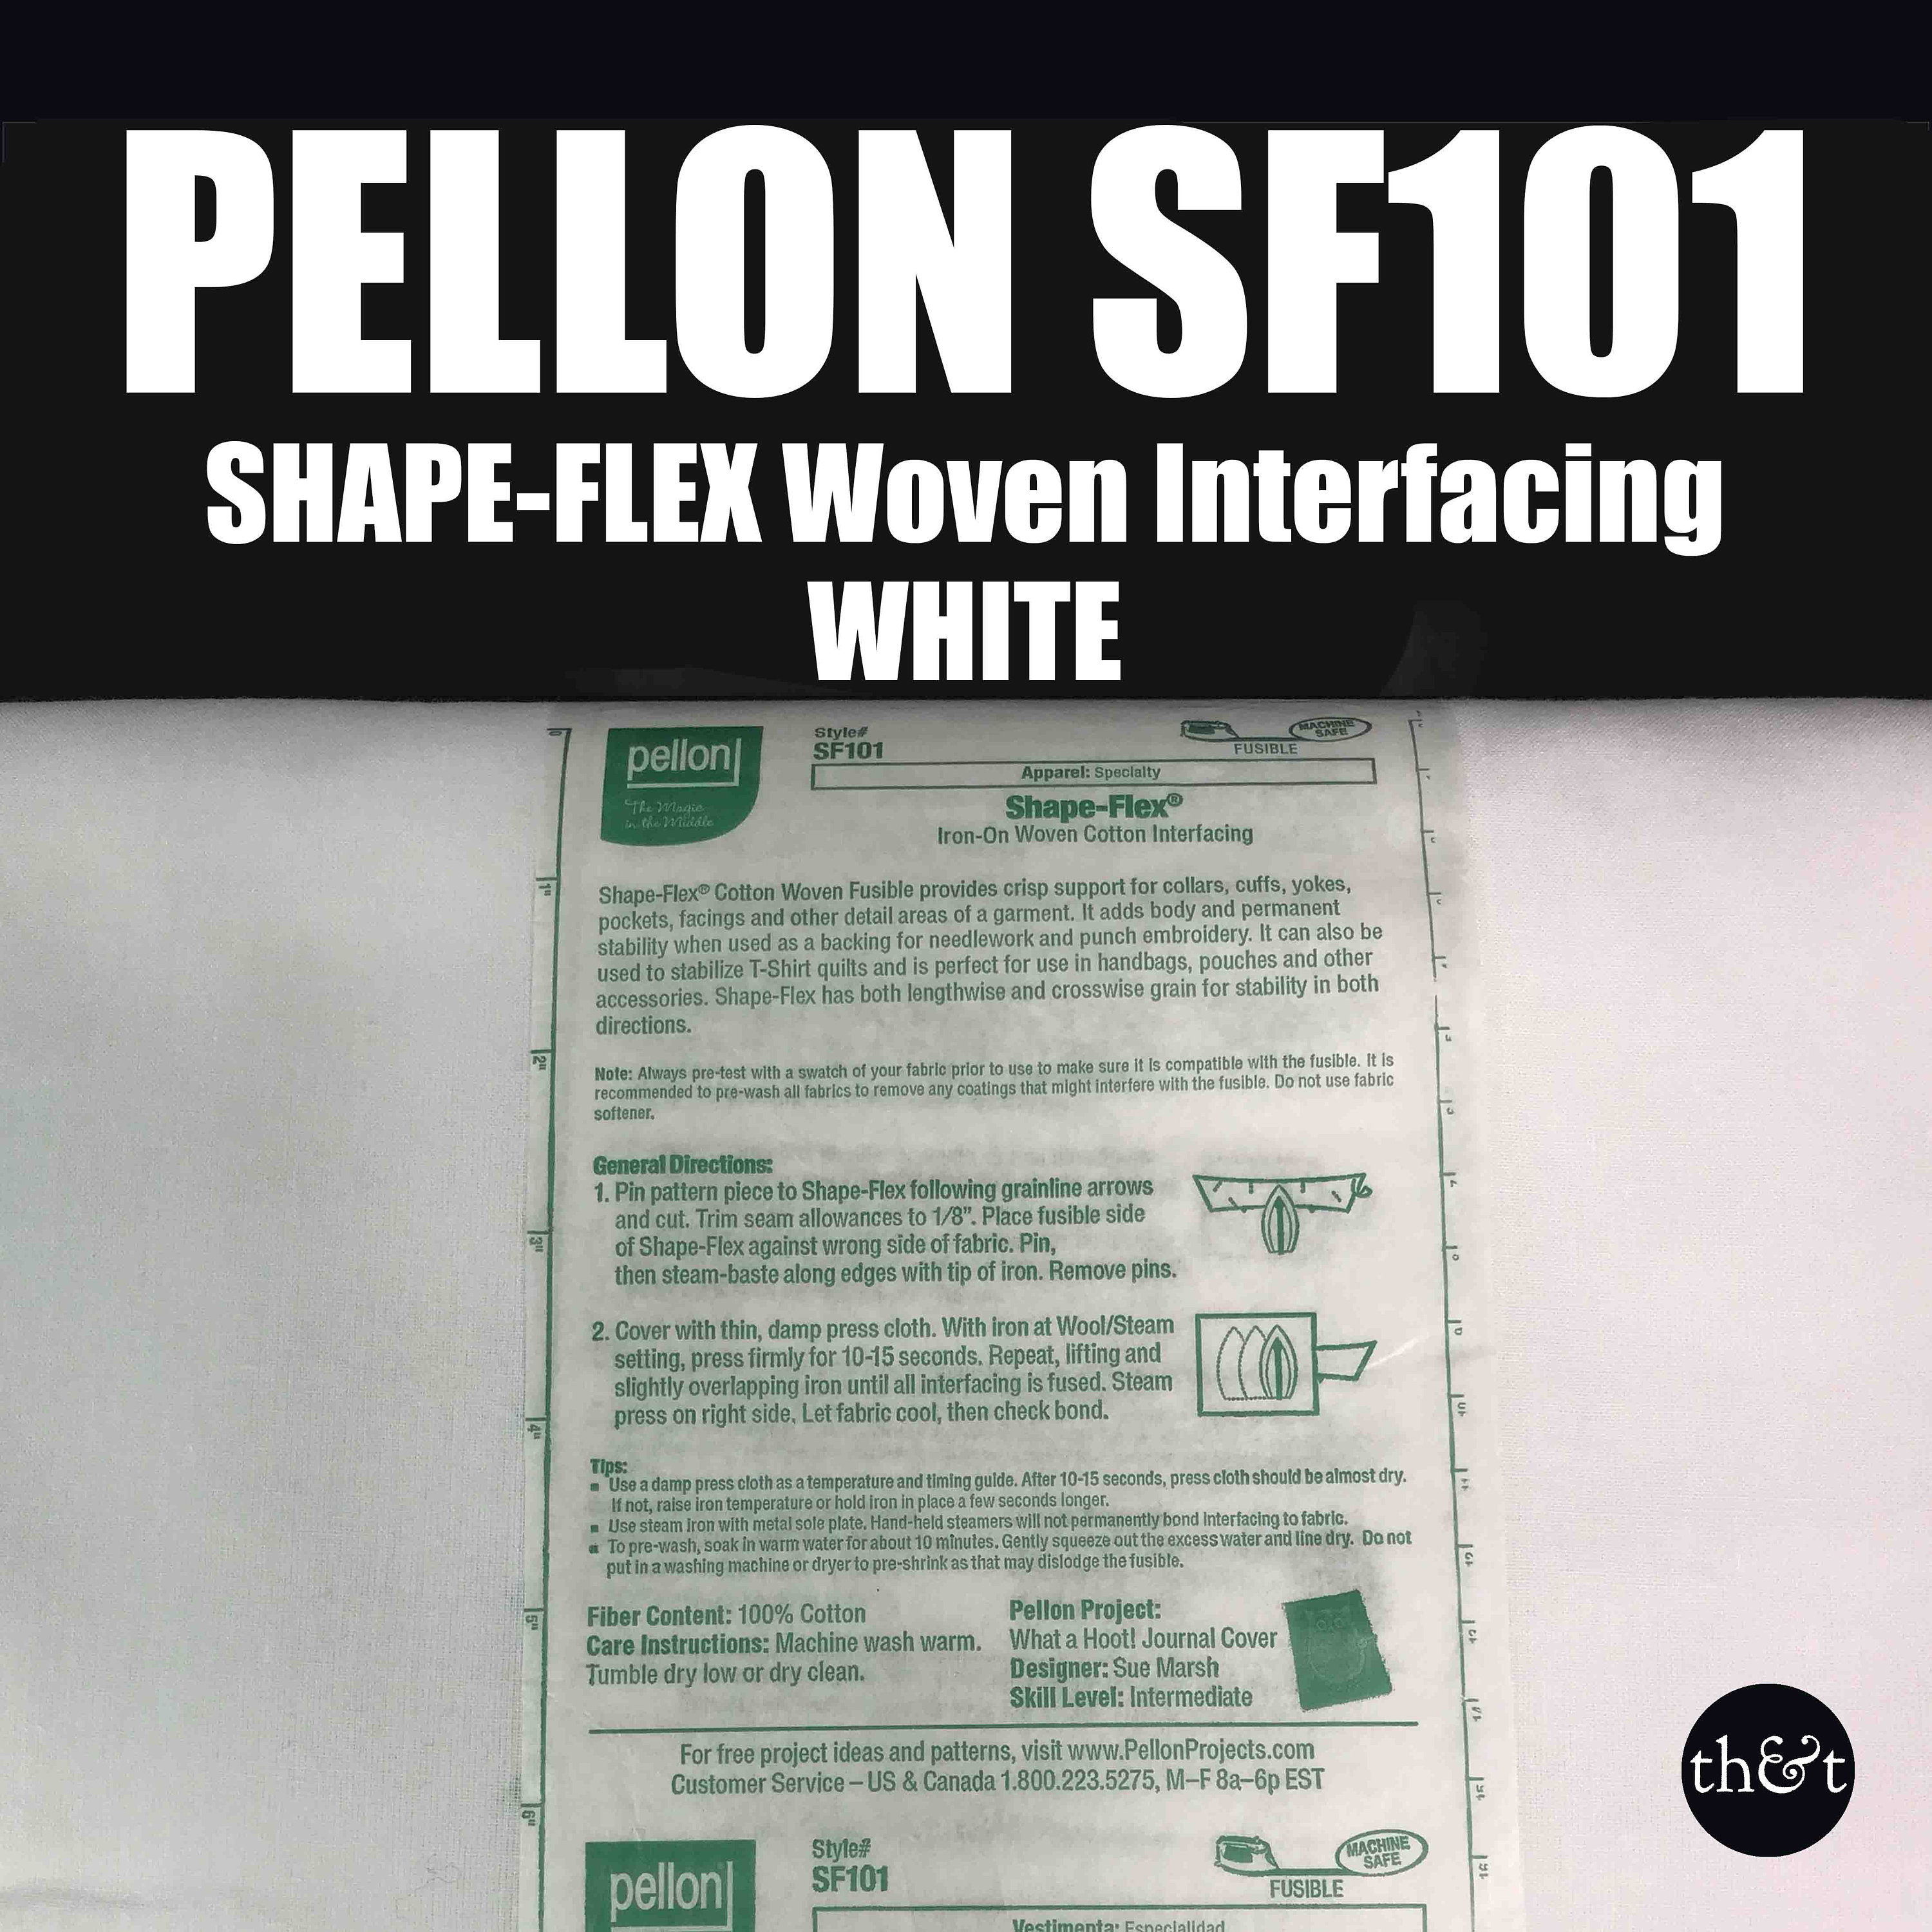 Pellon - 911FF - Fusible Interfacing - Nonwoven - 1 Yd Cut